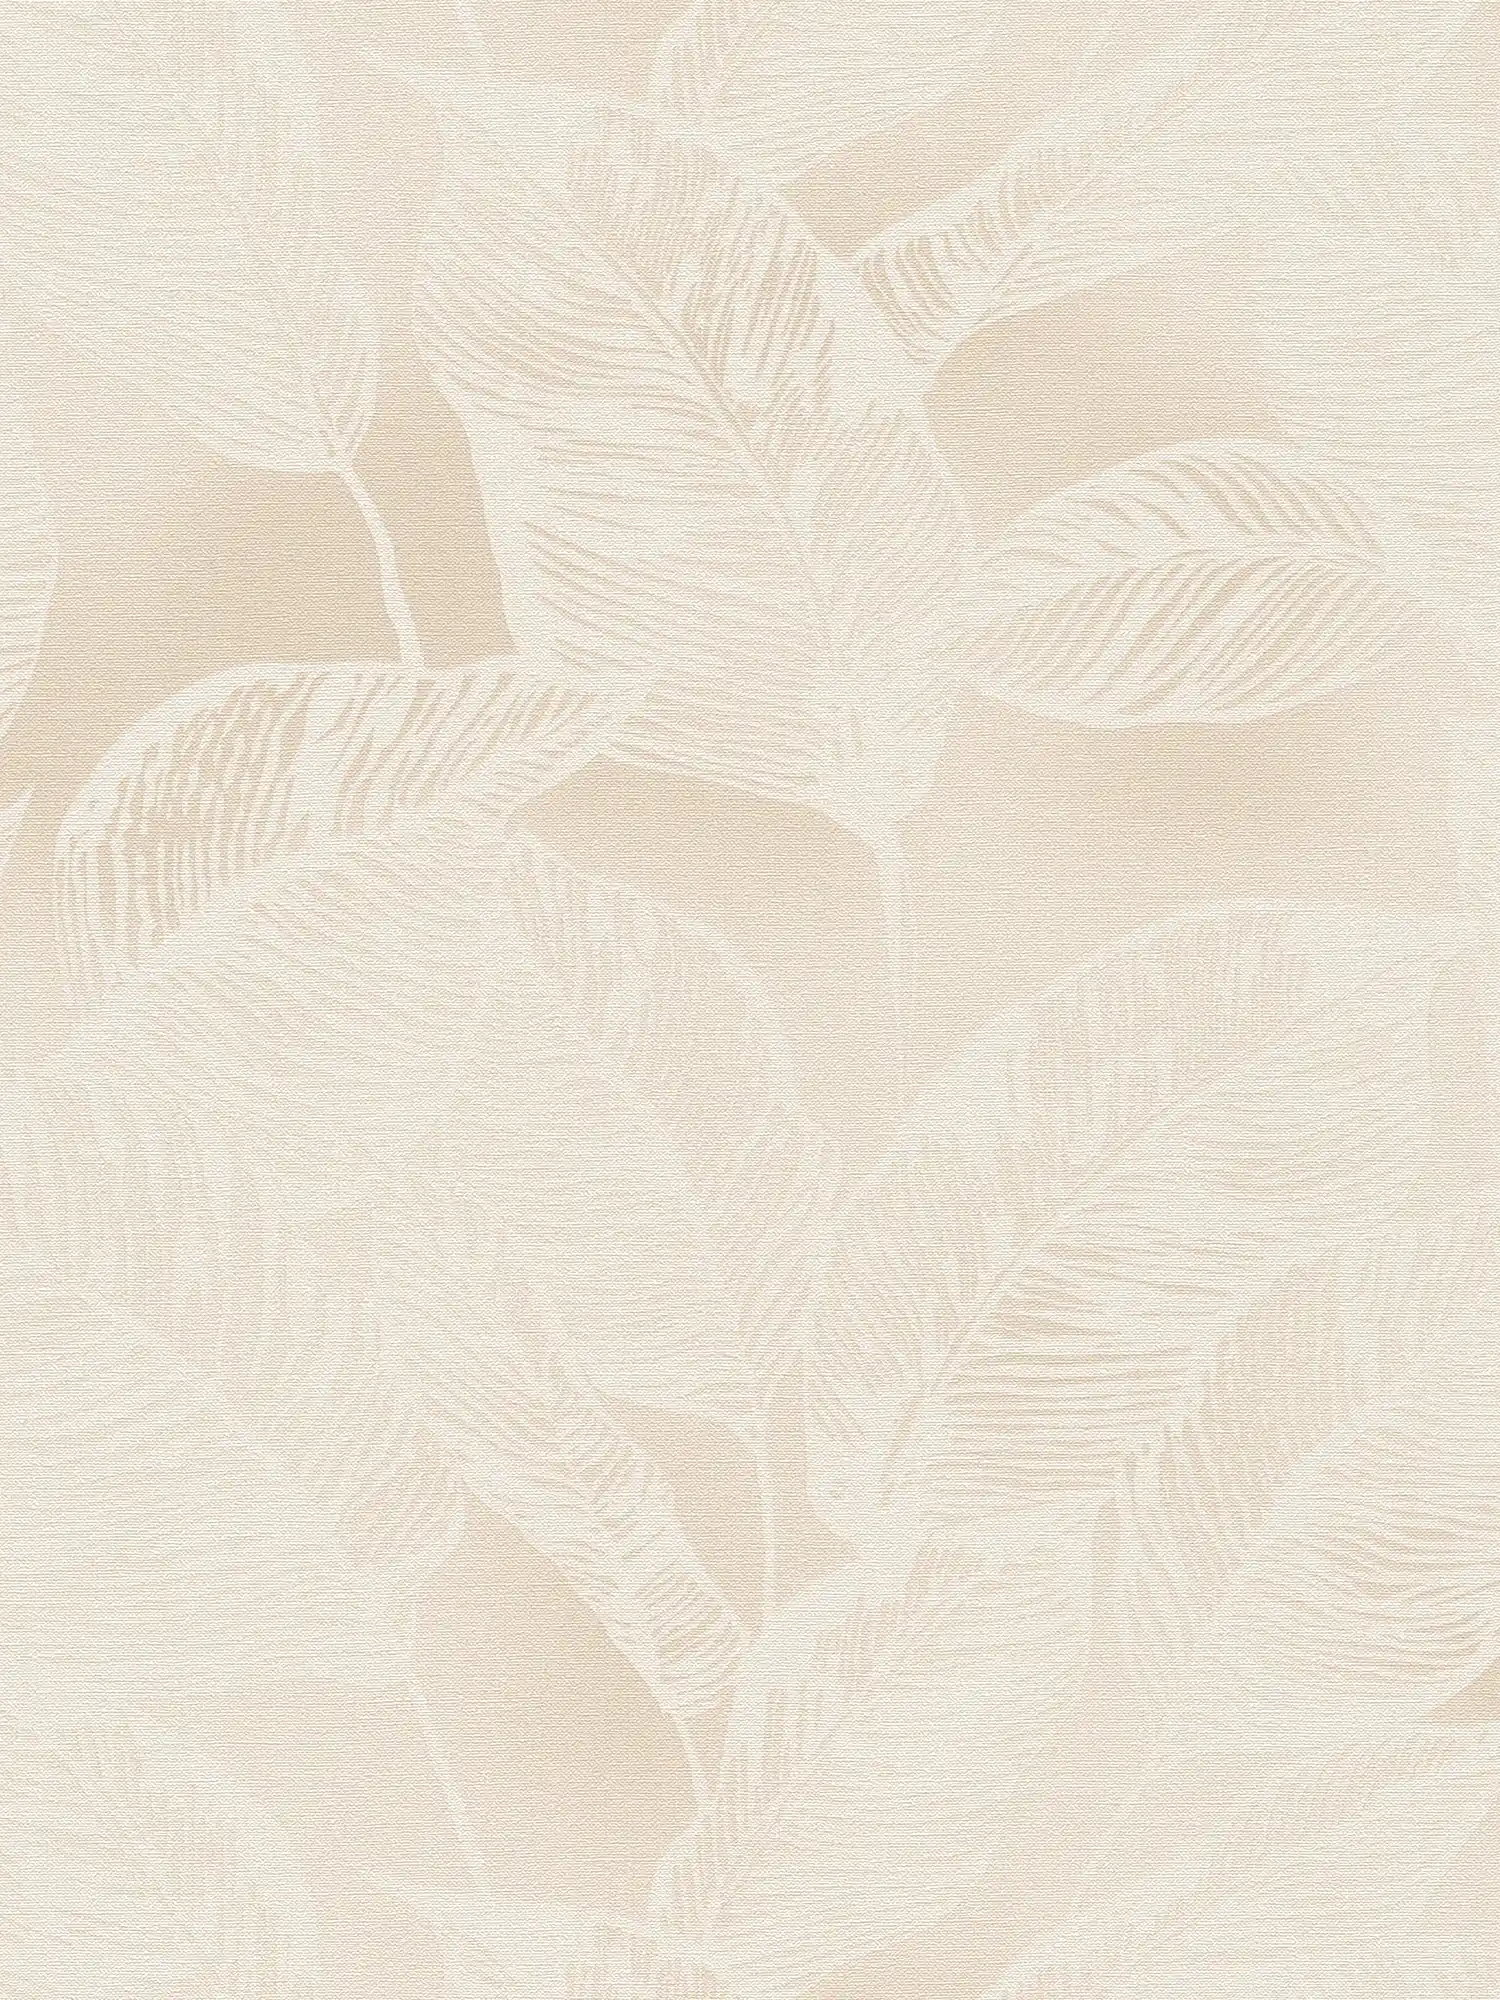 Bladpatroon vliesbehang PVC-vrij - beige, wit
